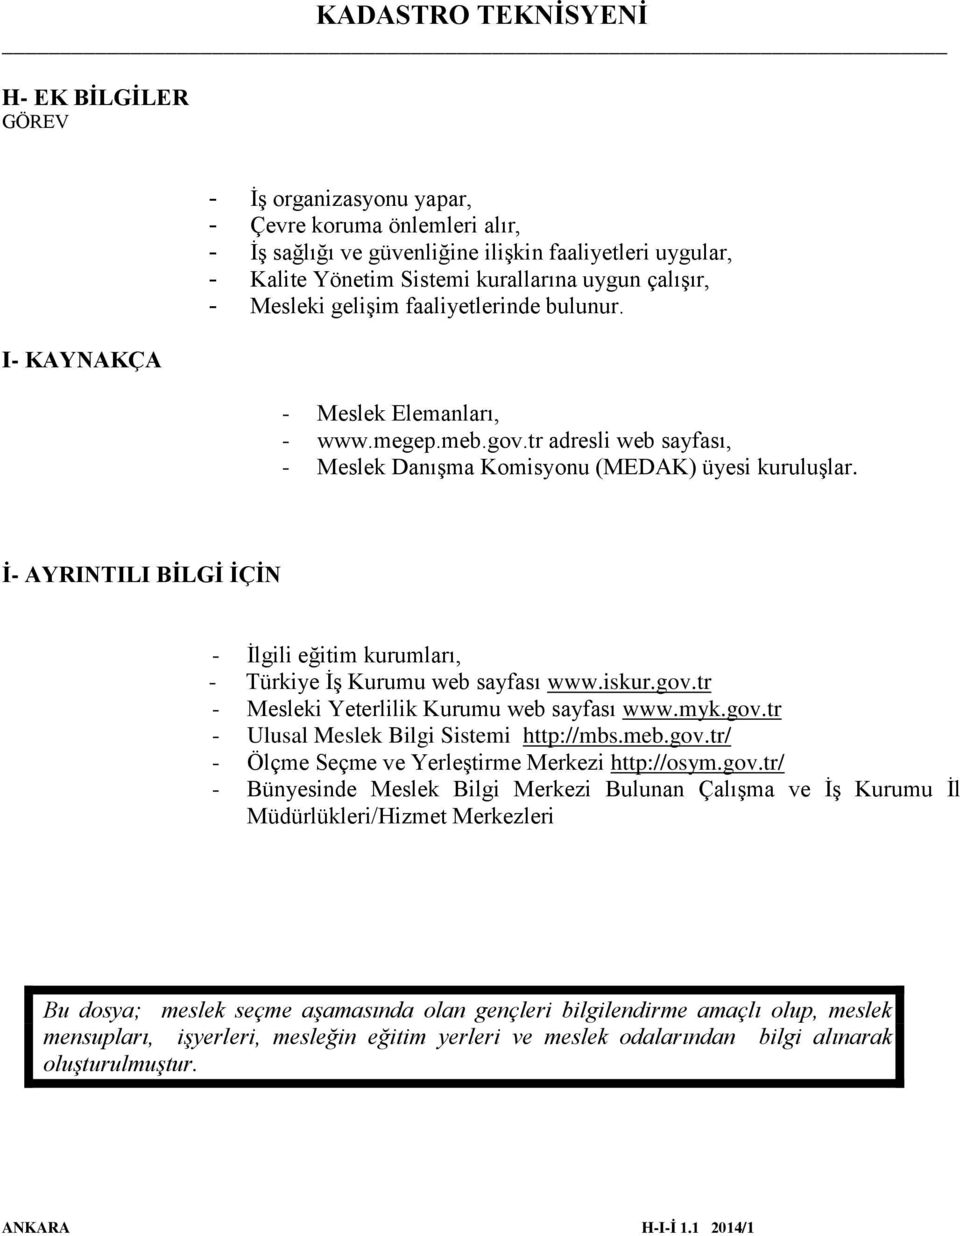 İ- AYRINTILI BİLGİ İÇİN - İlgili eğitim kurumları, - Türkiye İş Kurumu web sayfası www.iskur.gov.tr - Mesleki Yeterlilik Kurumu web sayfası www.myk.gov.tr - Ulusal Meslek Bilgi Sistemi http://mbs.meb.